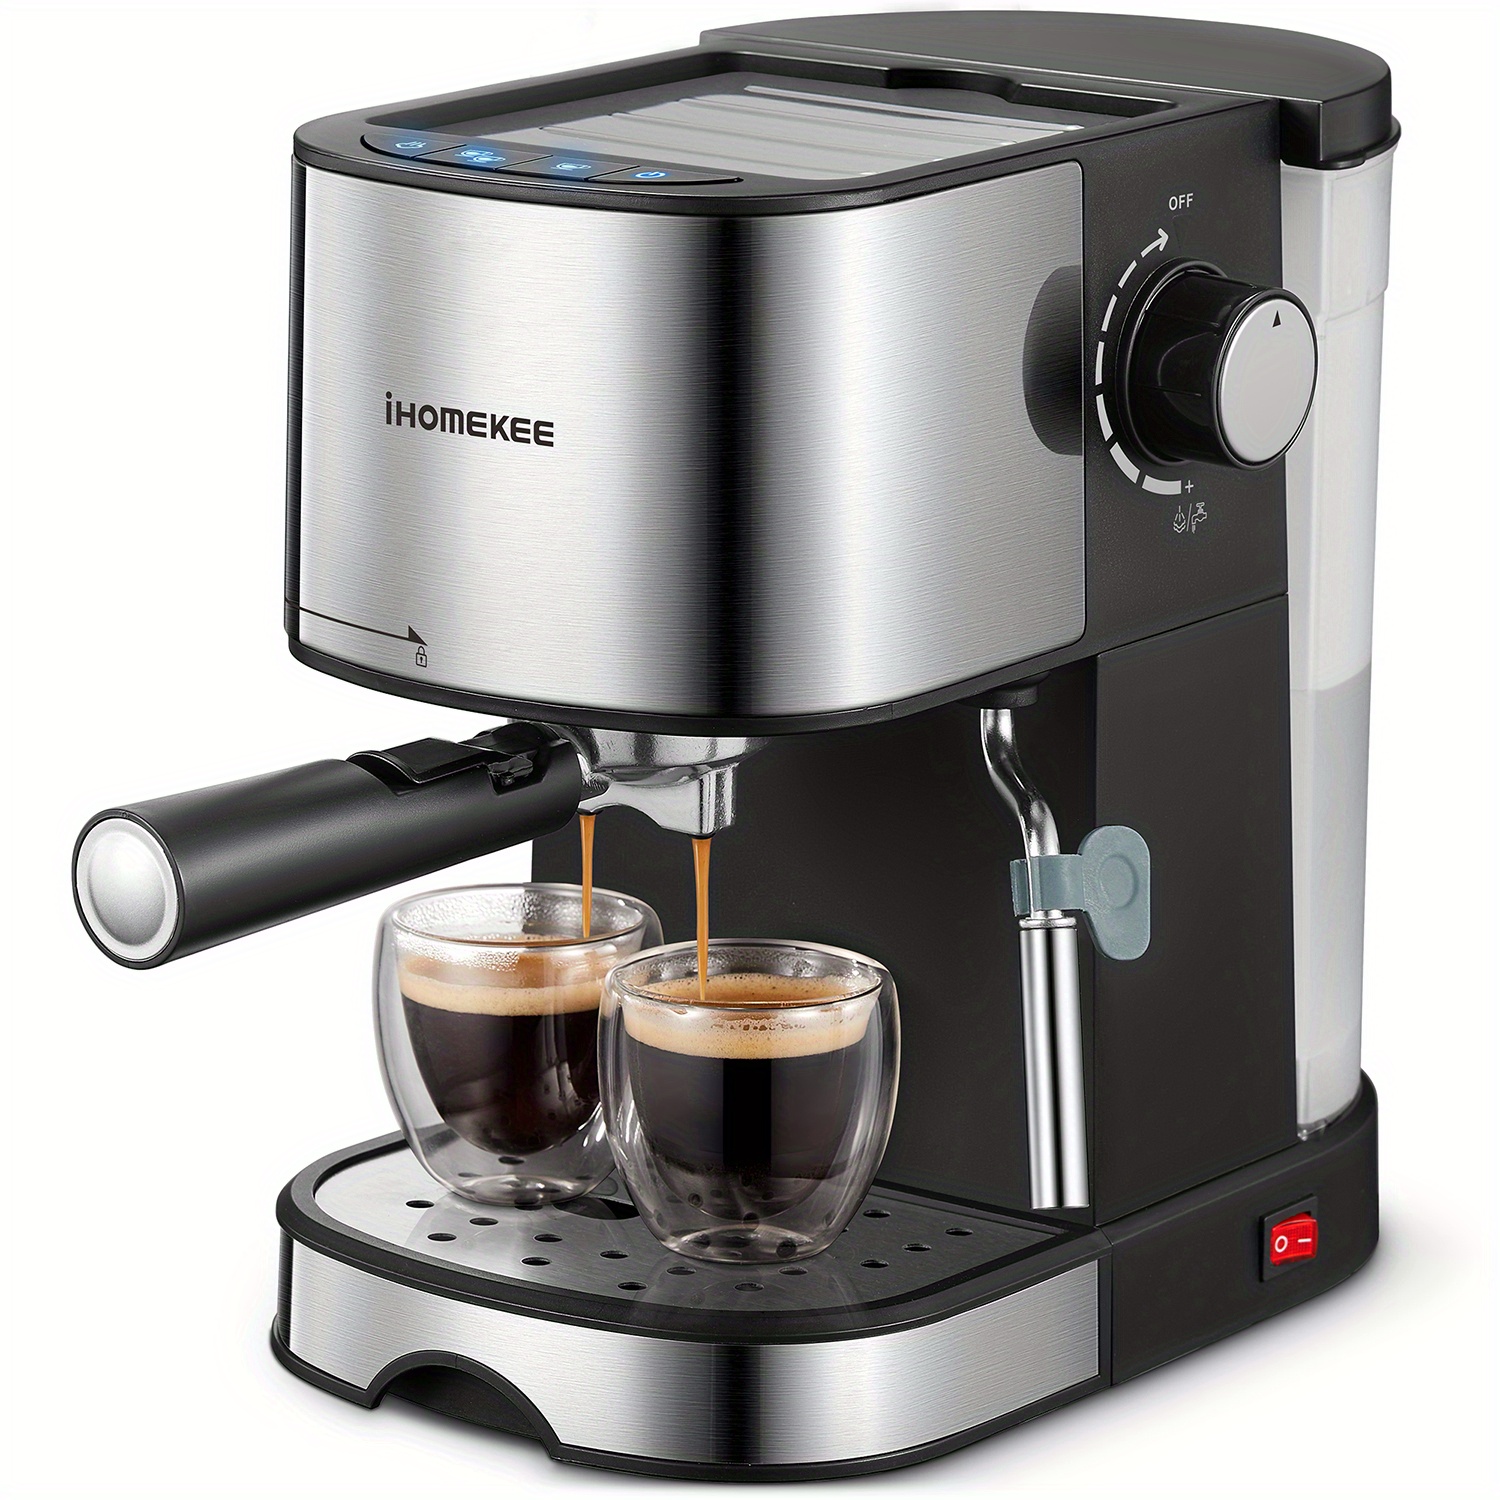 

Espresso Machine 15 Bar Pump Pressure, Espresso And Cappuccino Coffee Maker With Milk Frother/steam Wand For Latte, Mocha, Cappuccino, Silver+black